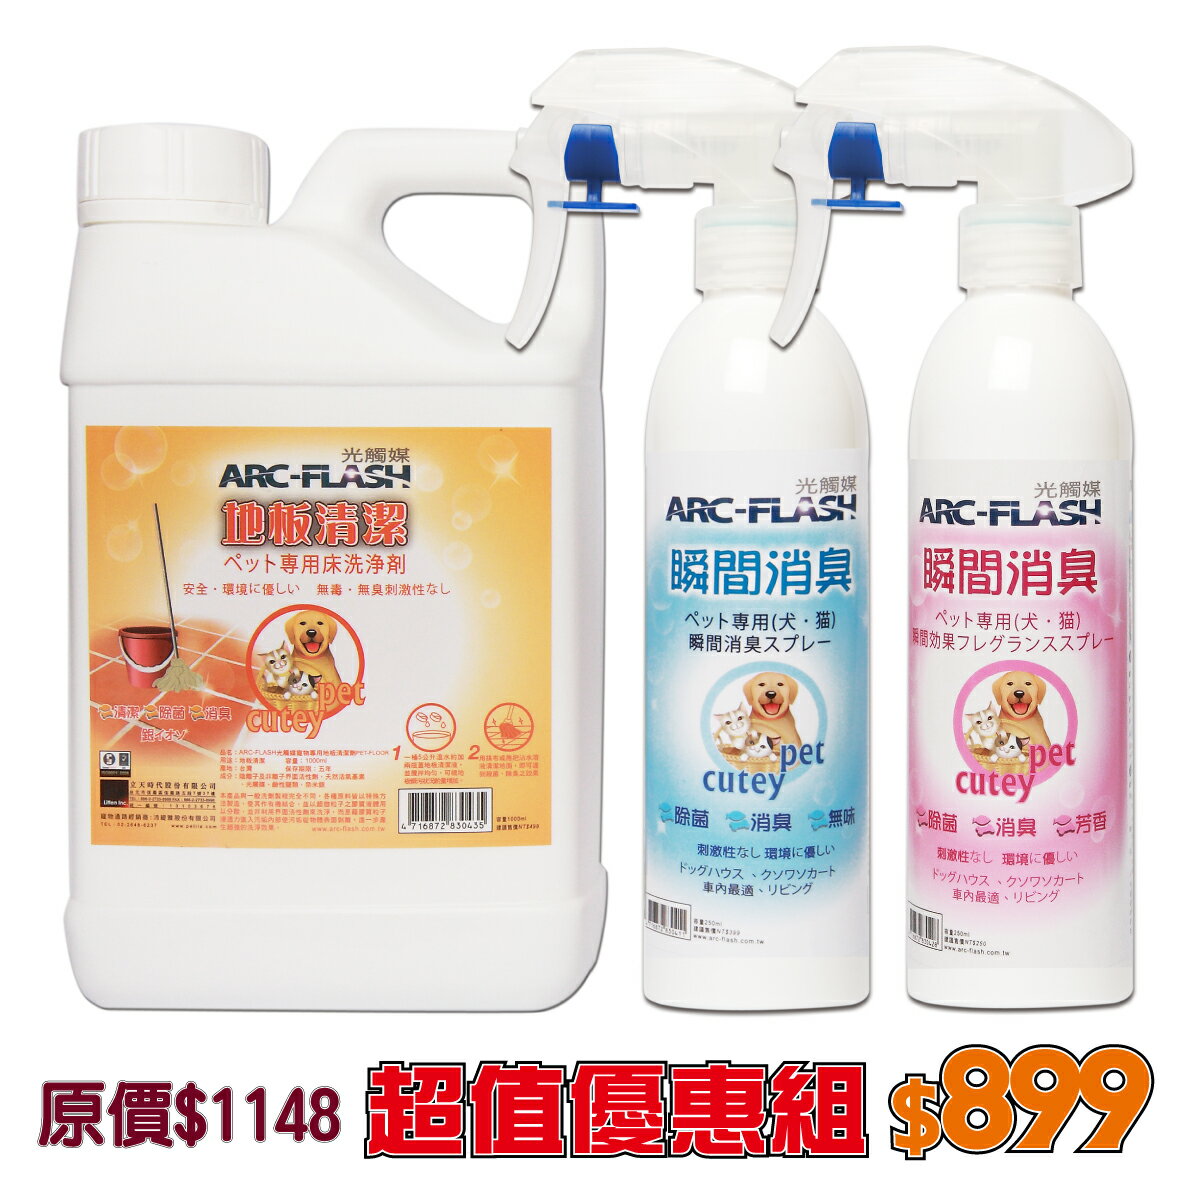 【超值組合】ARC-FLASH光觸媒寵物除臭三件組 (瞬效除臭噴霧/芳香噴劑/地板清潔劑)